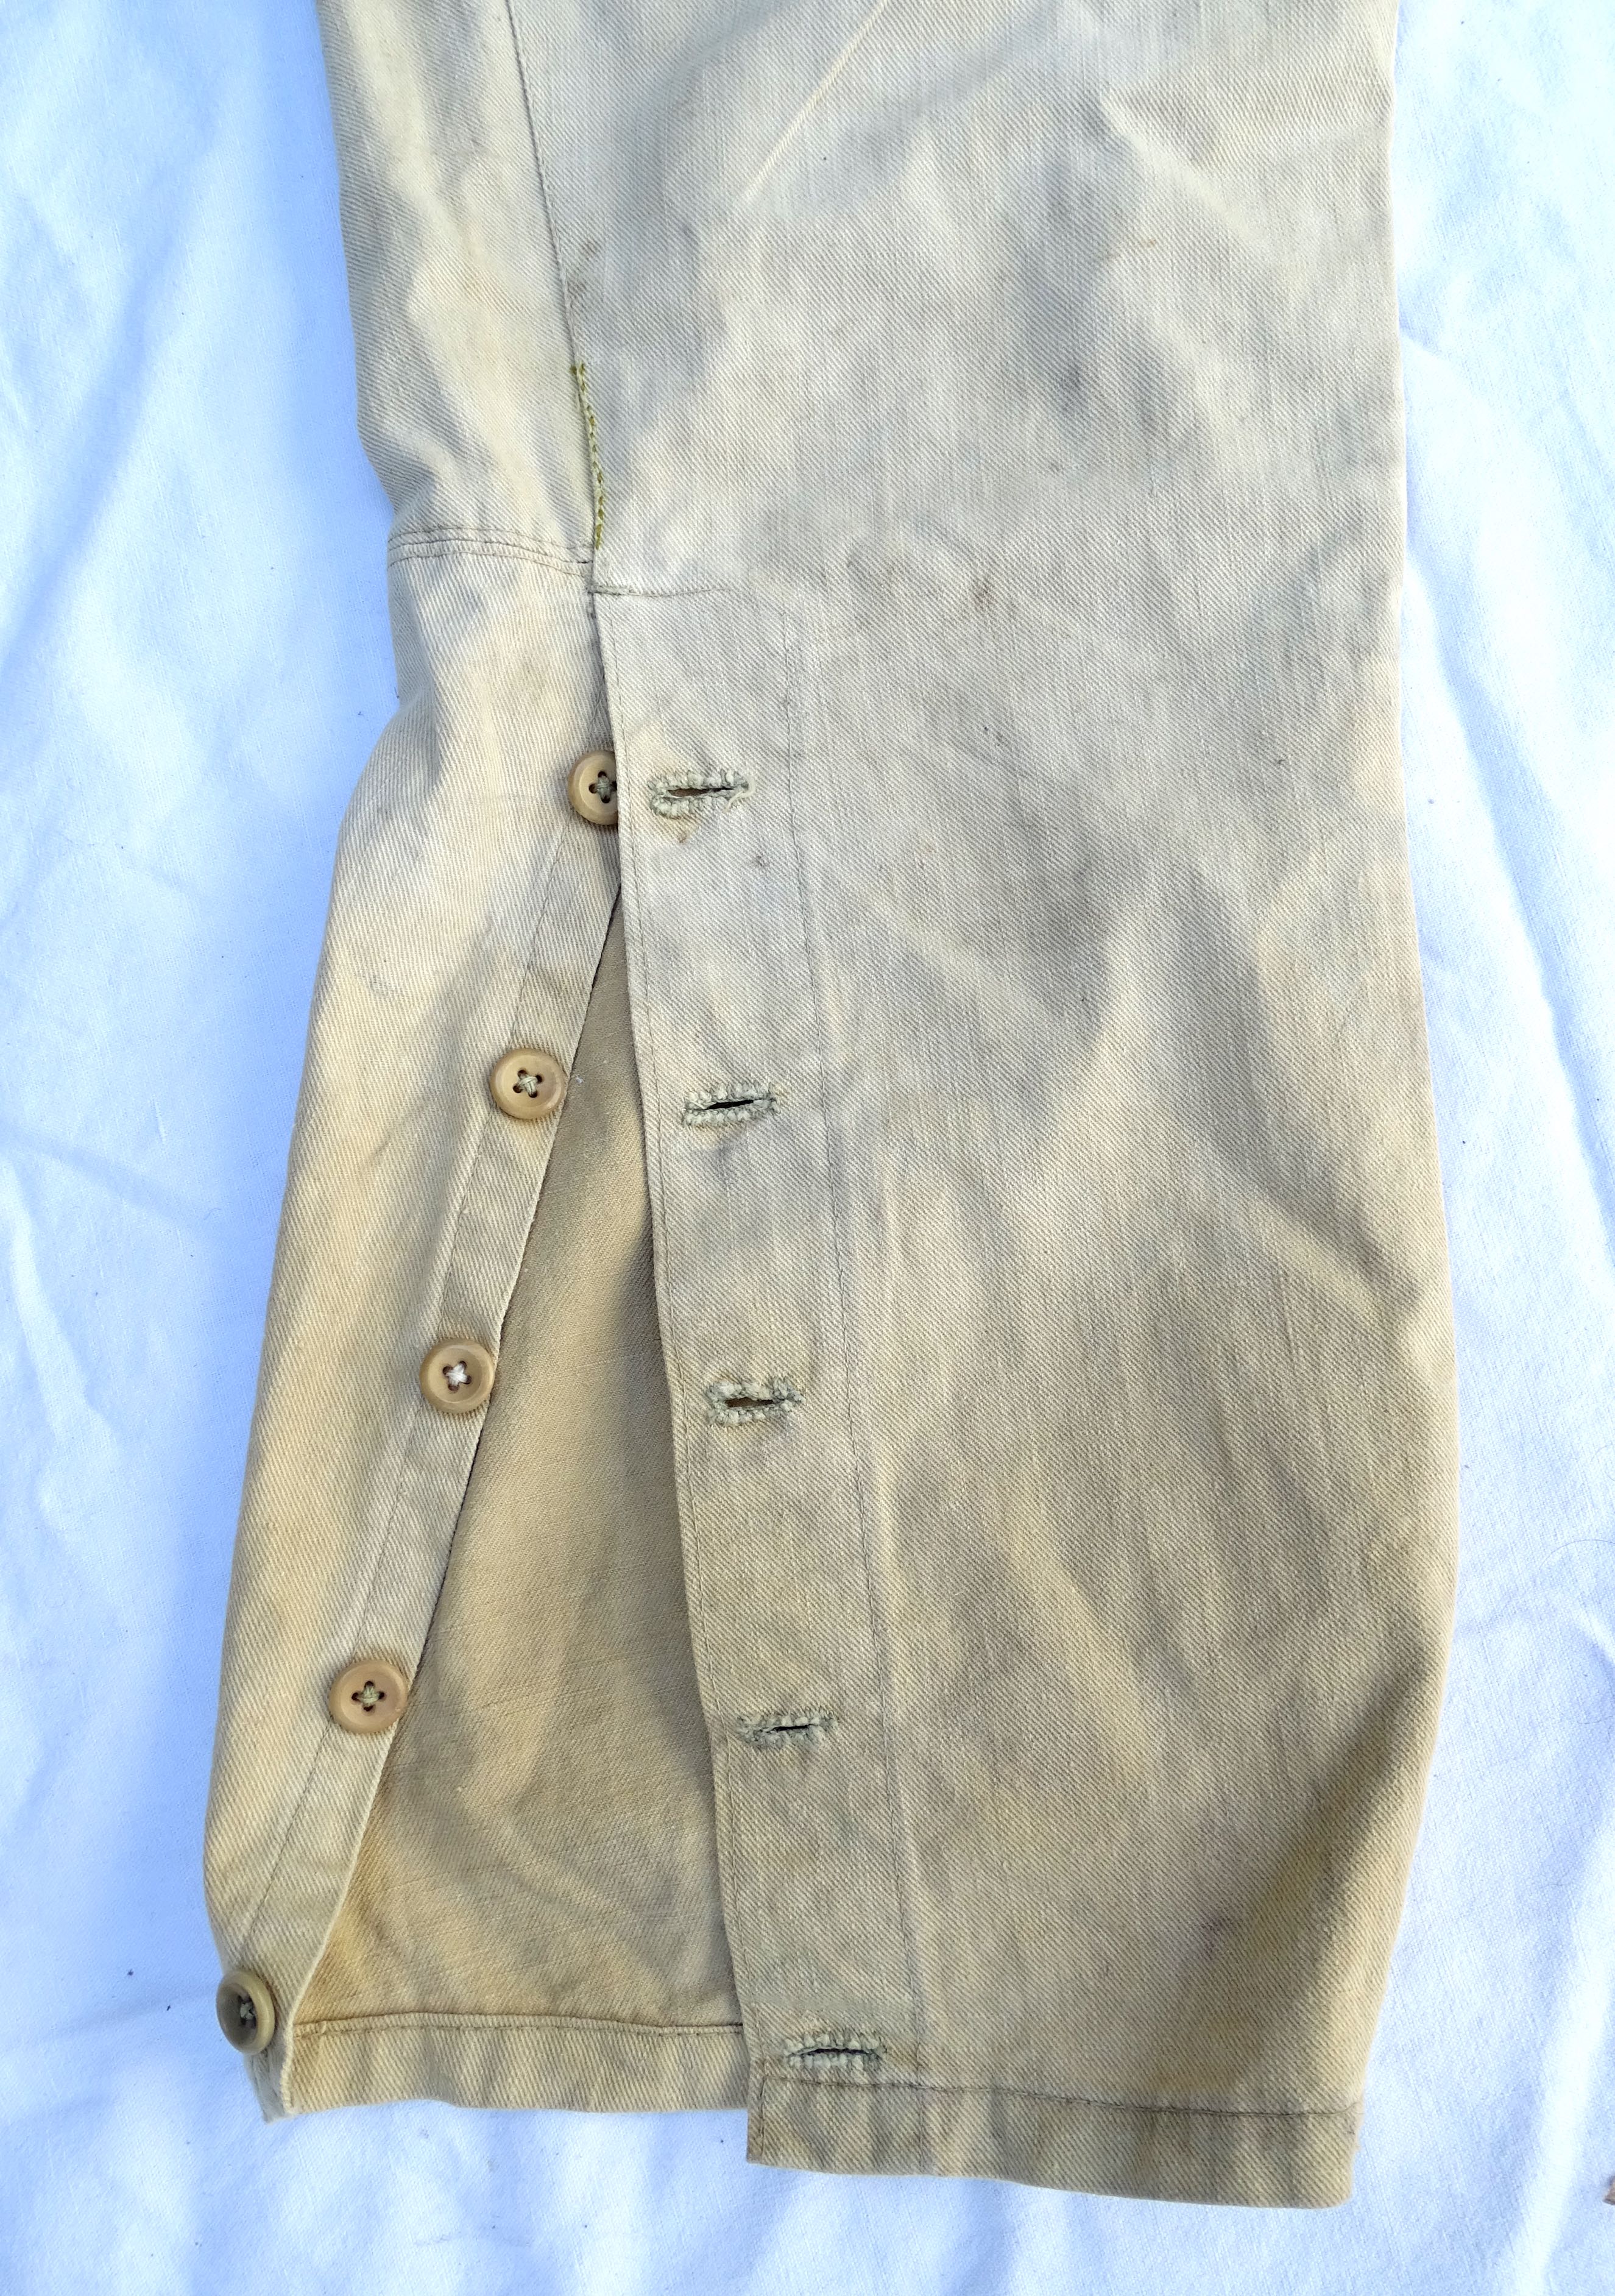 Pantalon culotte des Troupes Coloniales, Troupes Indig&egrave;nes